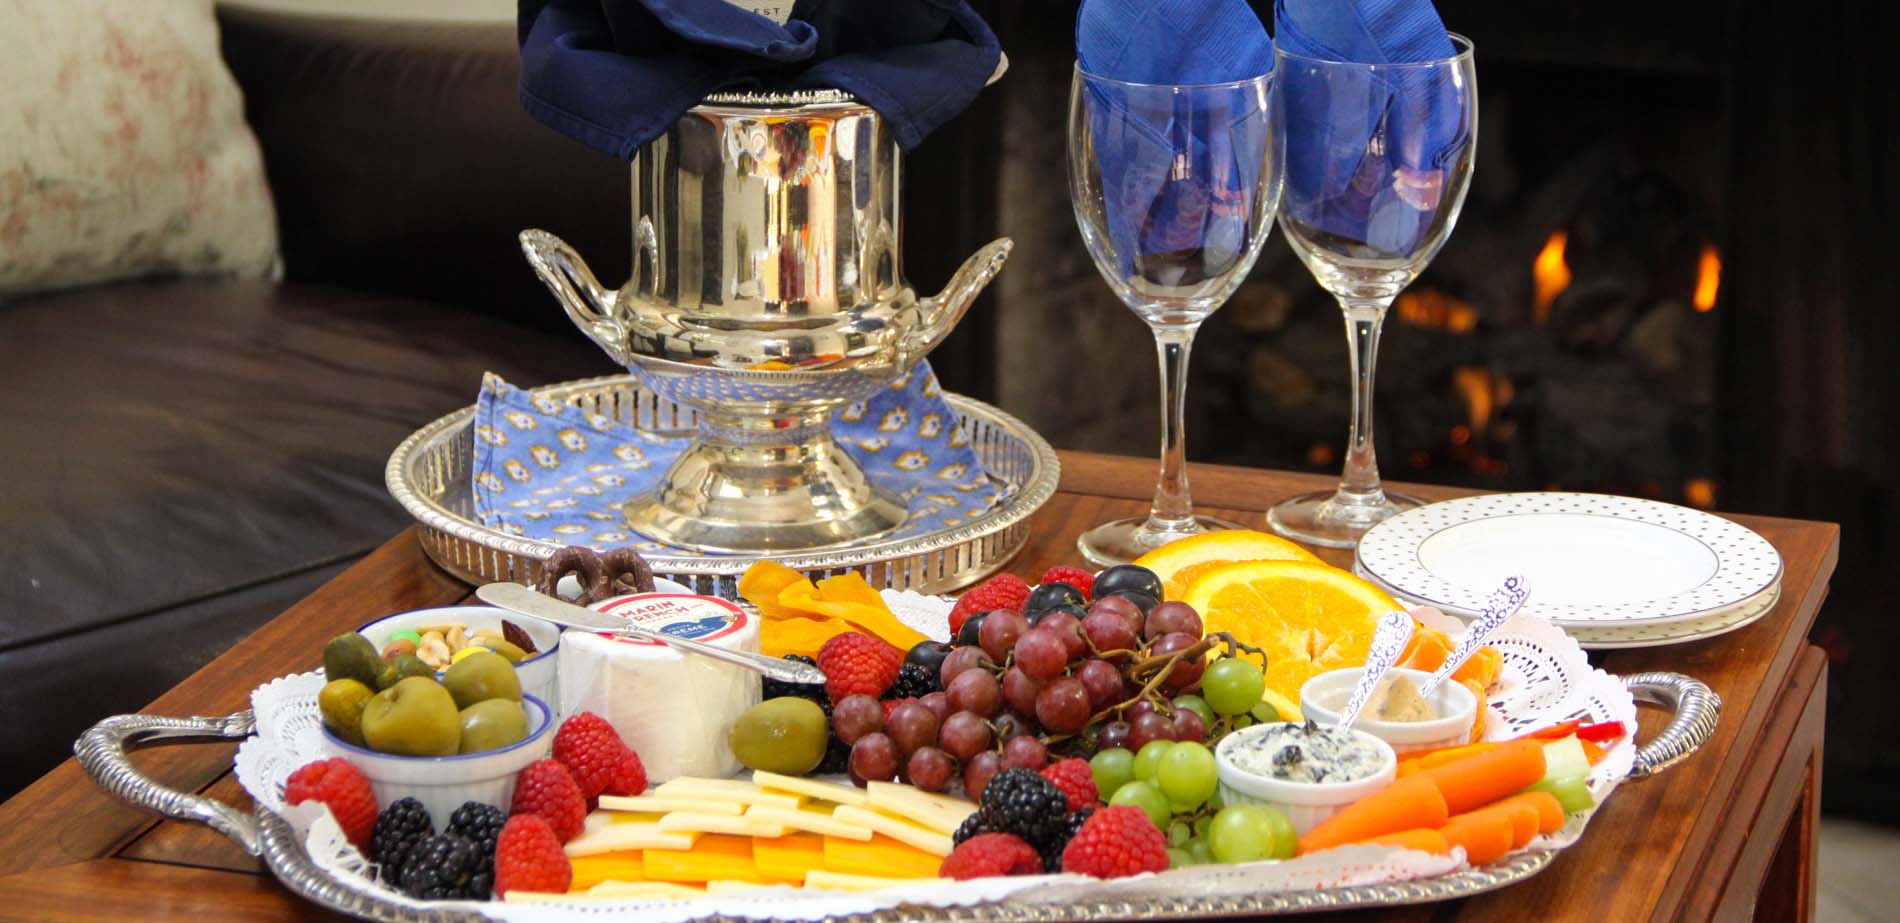 wine, cheese, fruit platter